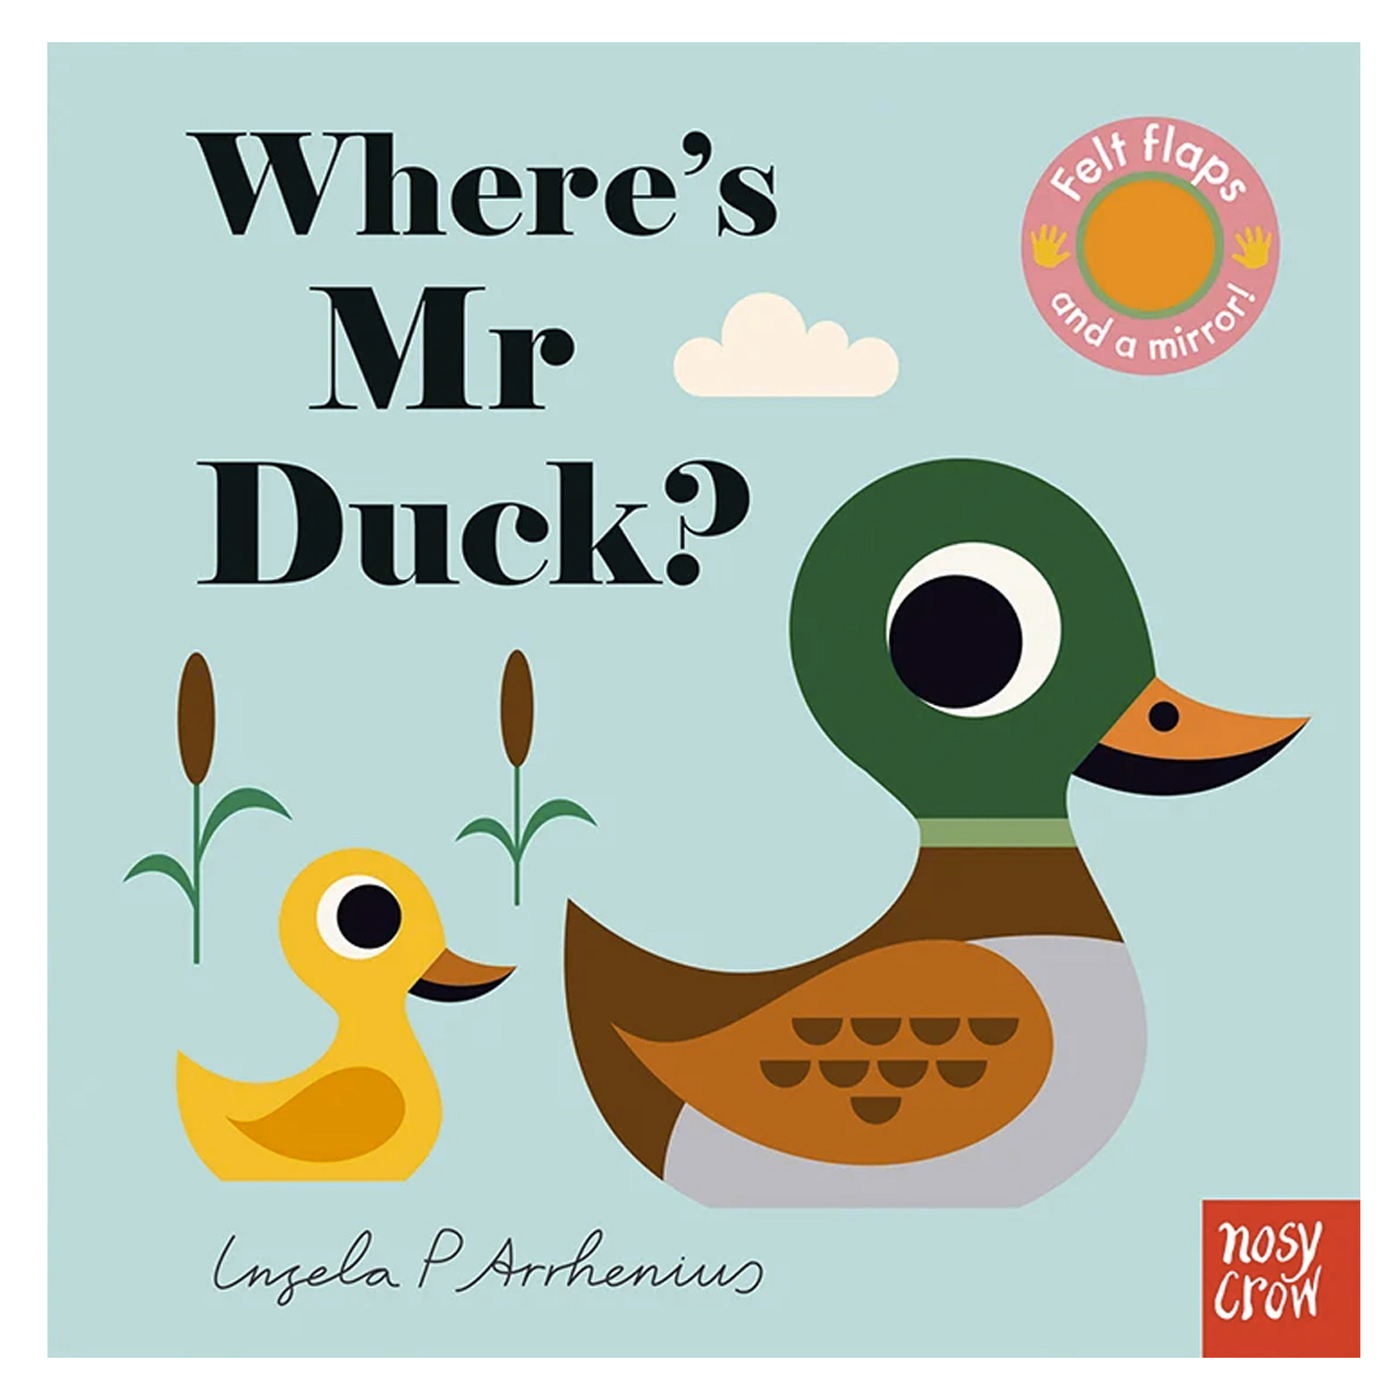  Where’s Mr Duck?